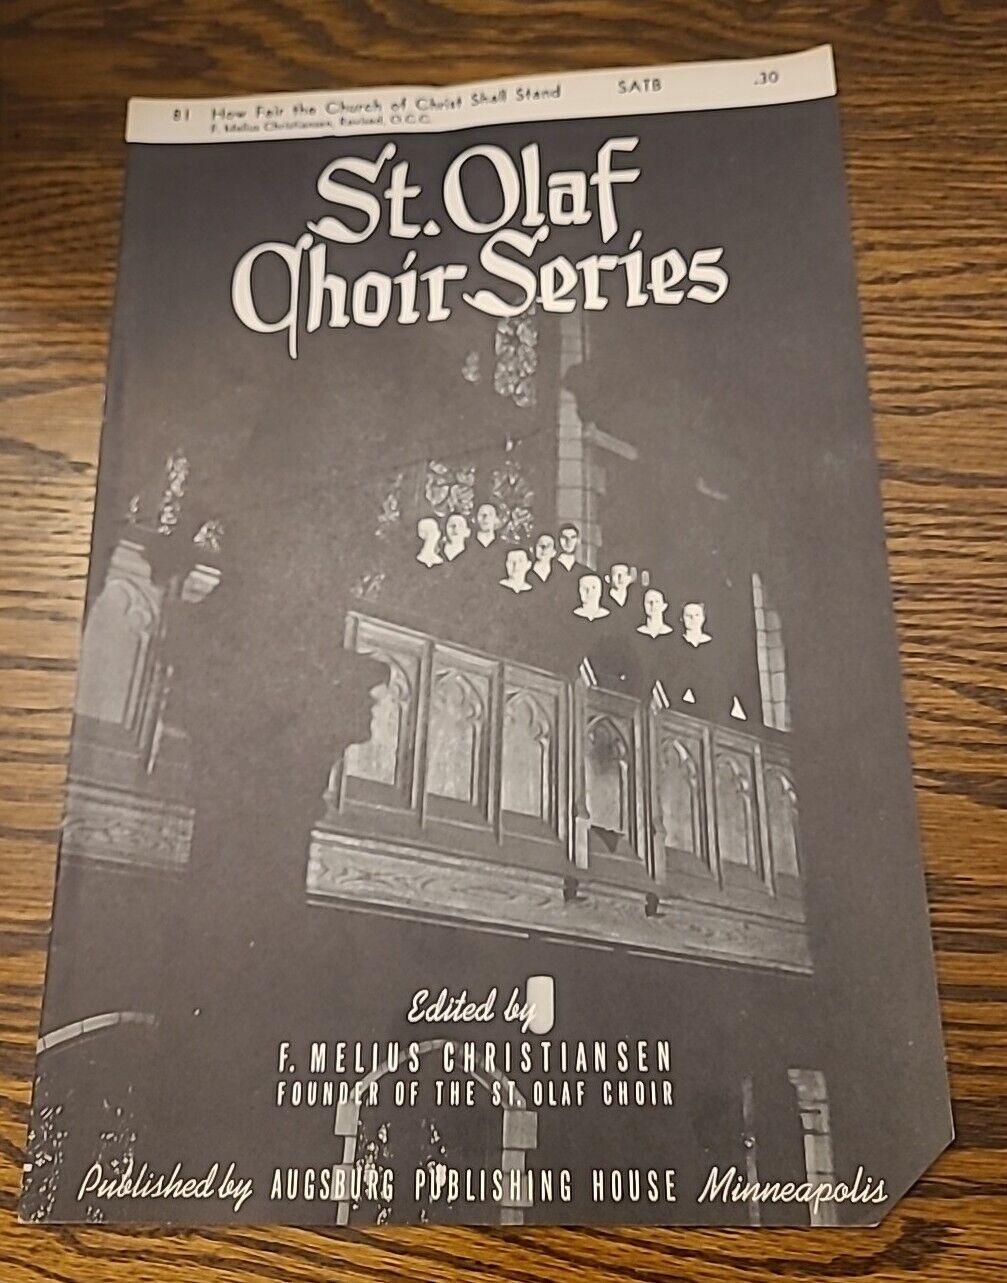 1968 How Fair The Church Of Christ Shall Stand ST Olaf Choir Series SMusic